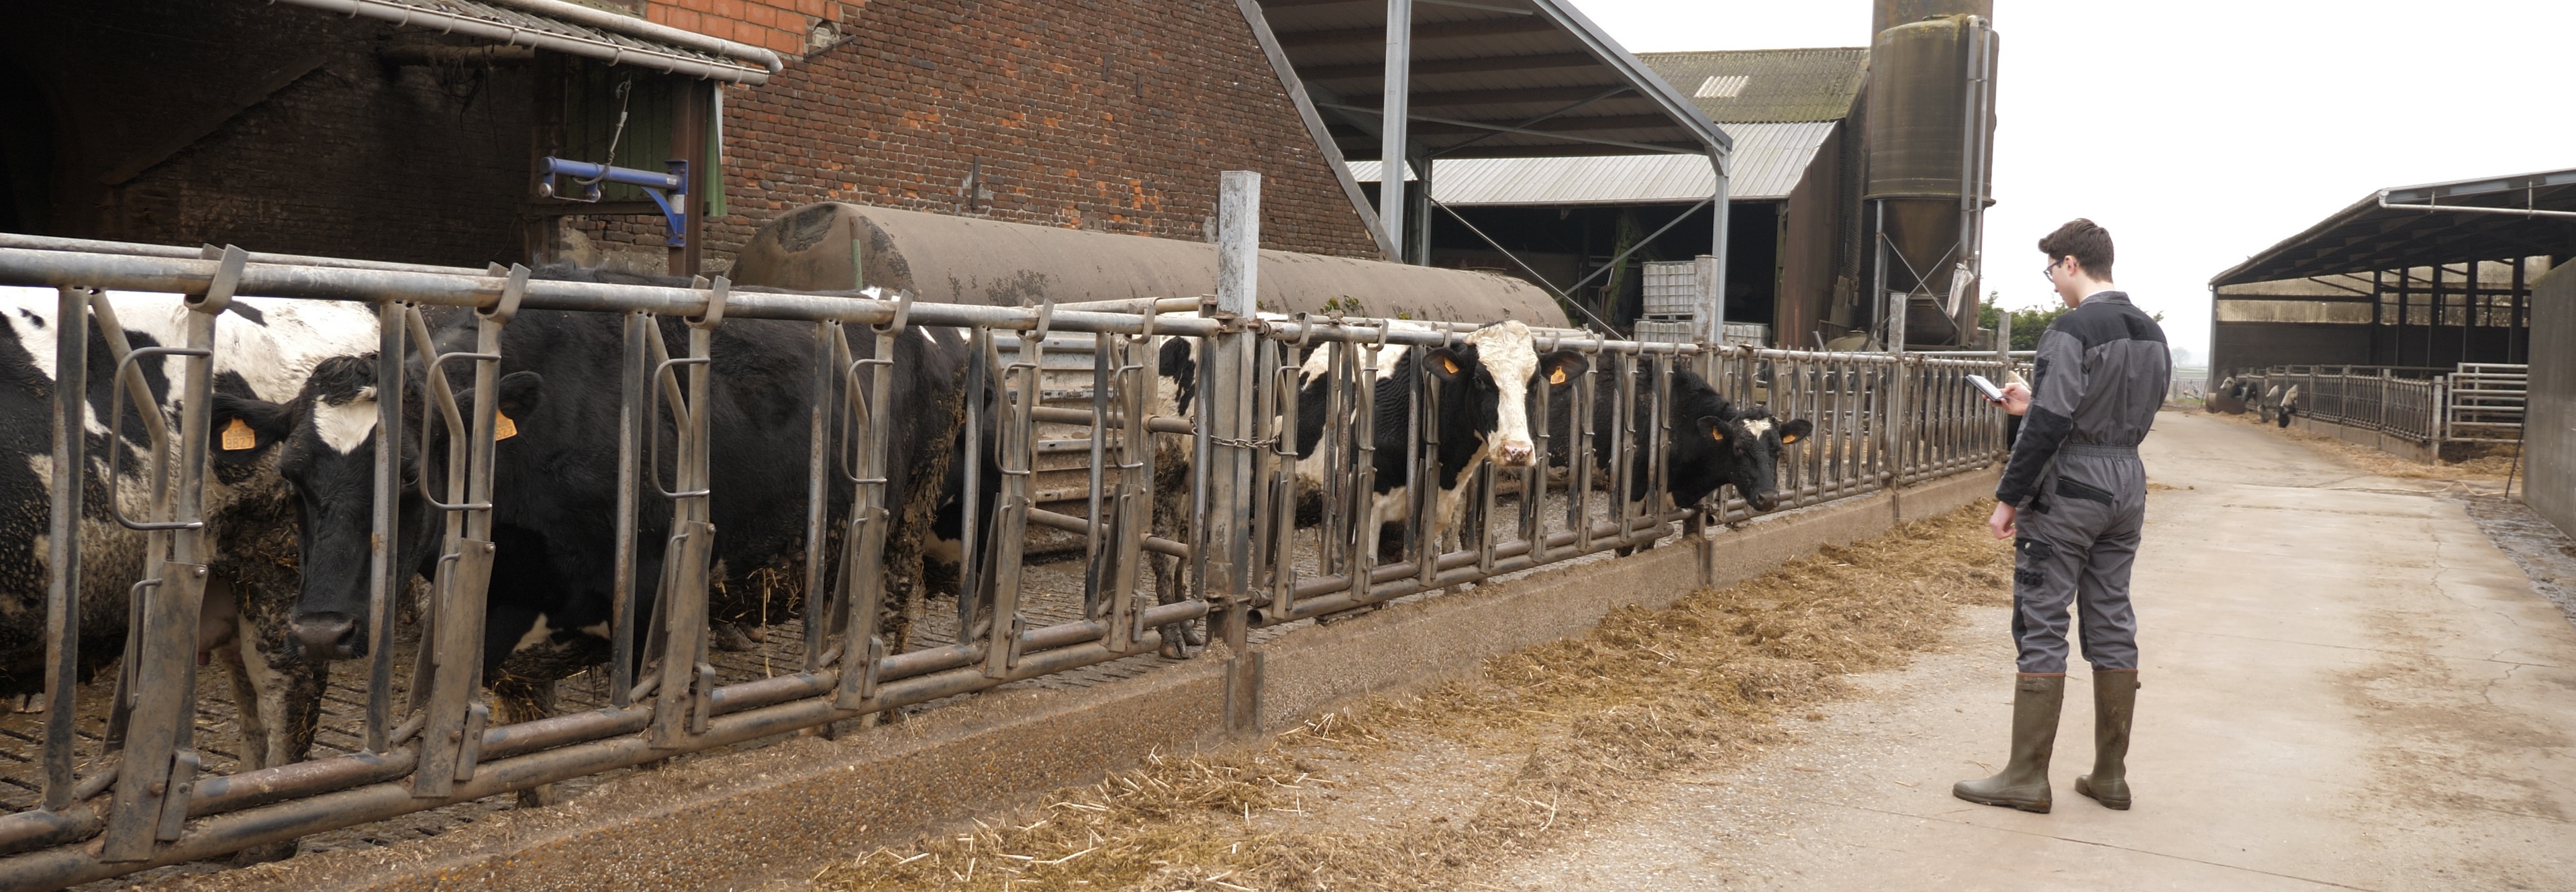 gestion de troupeaux de vaches laitieres